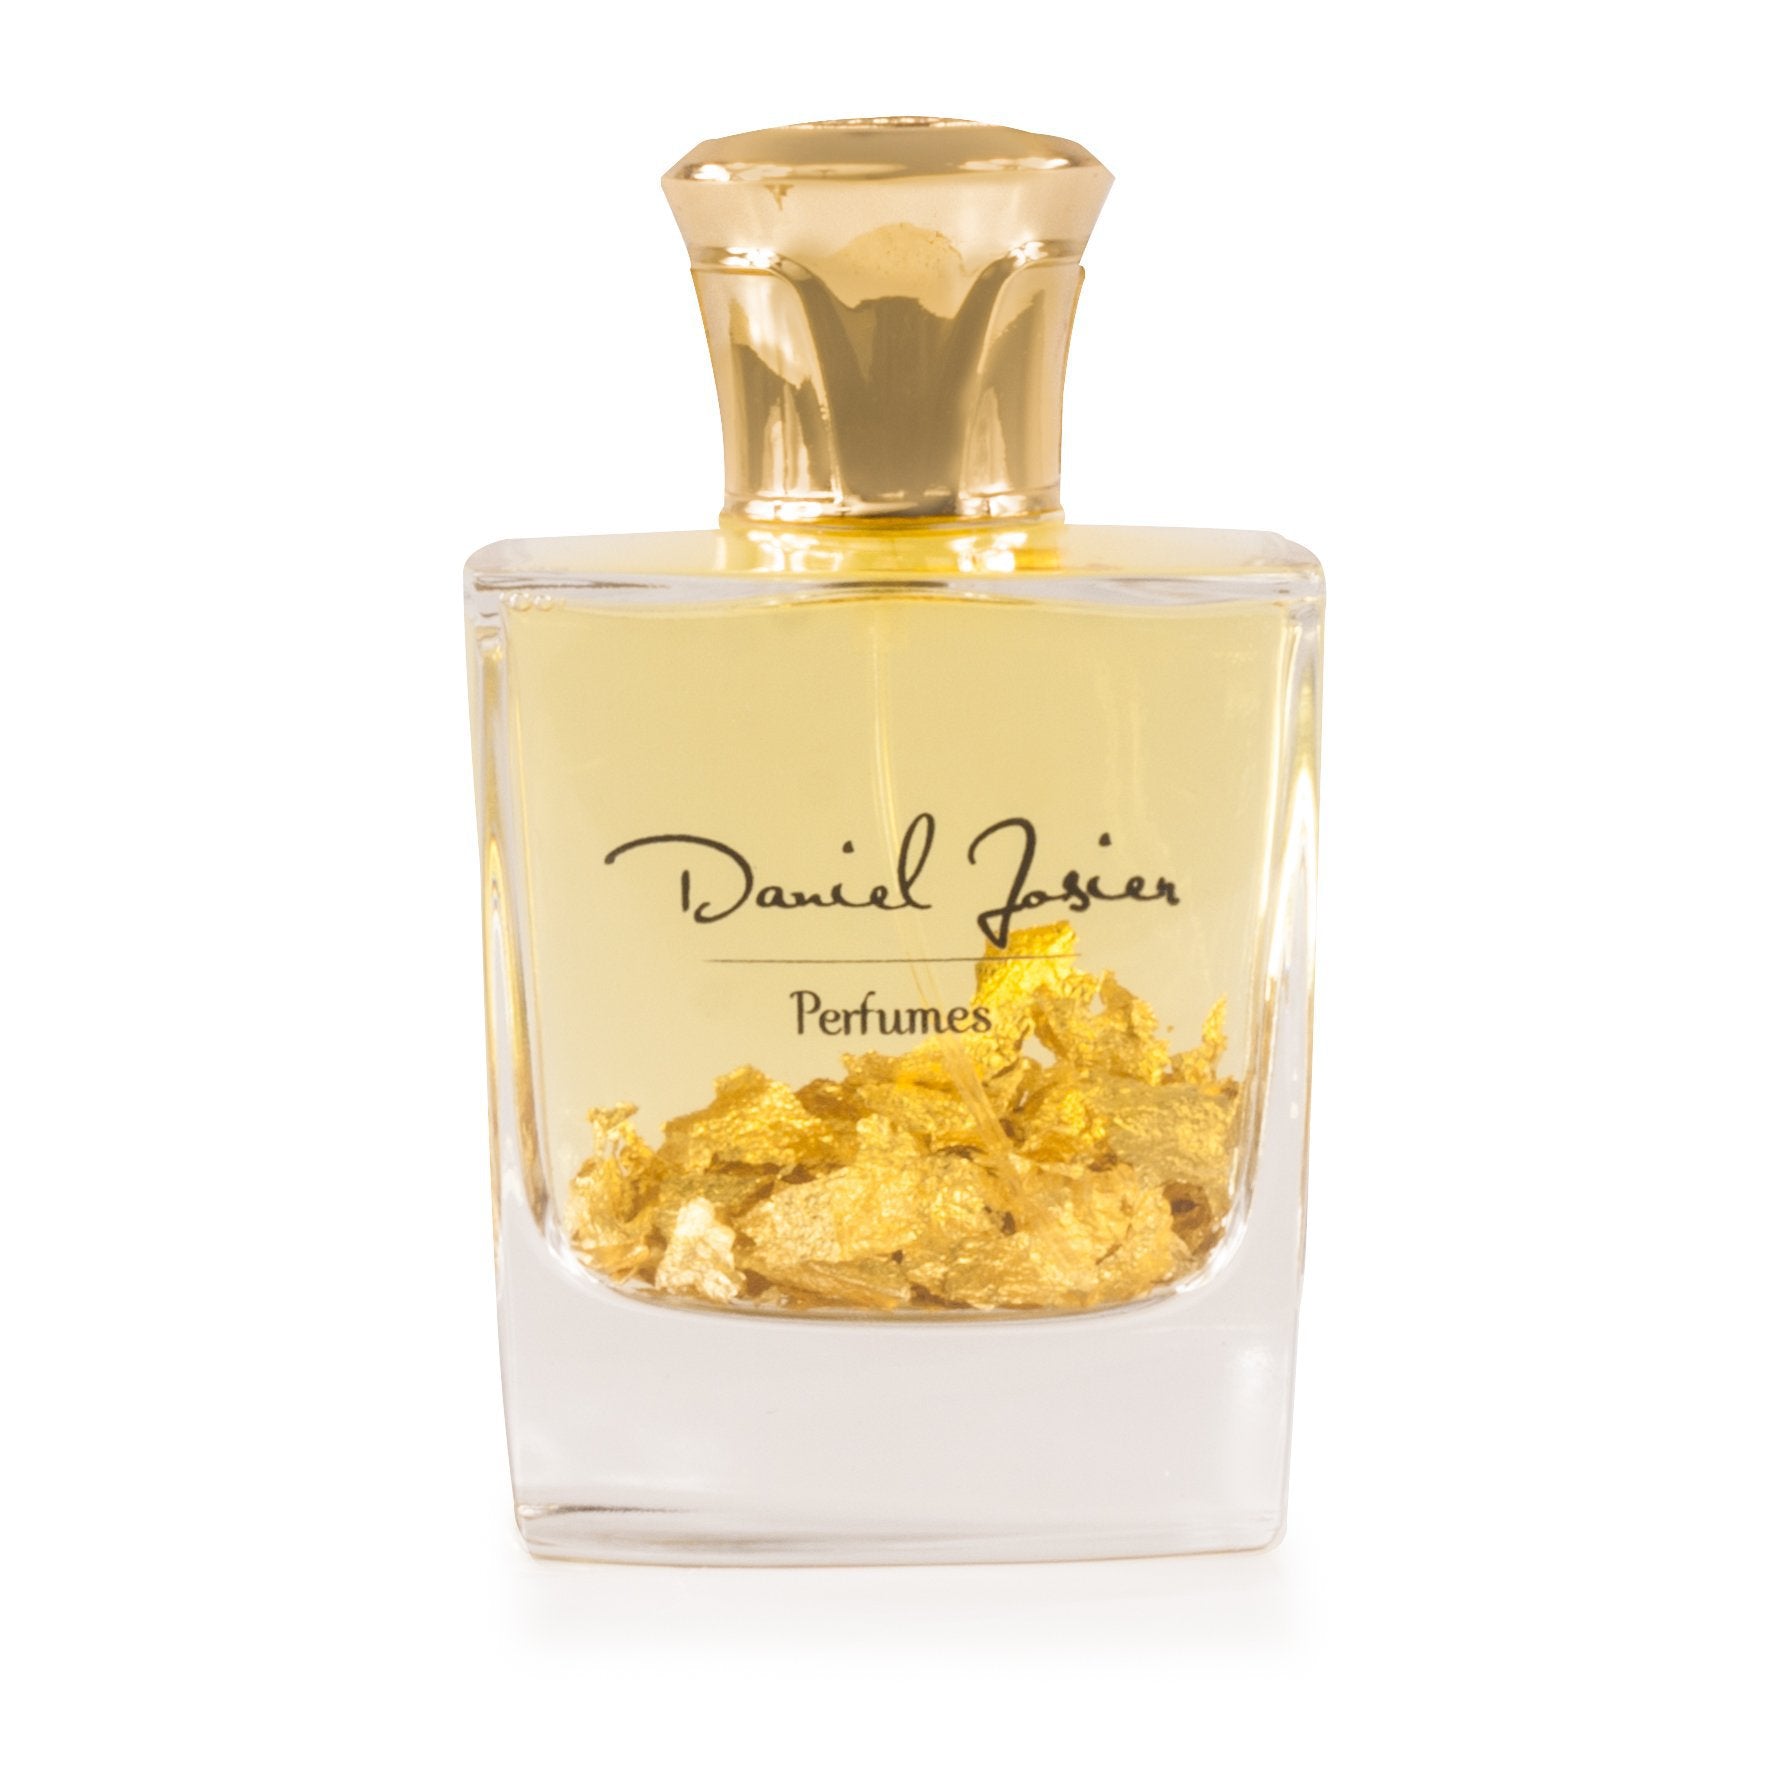 Golden Vetiver Eau de Parfum Spray for Women and Men by Daniel Josier, Product image 2